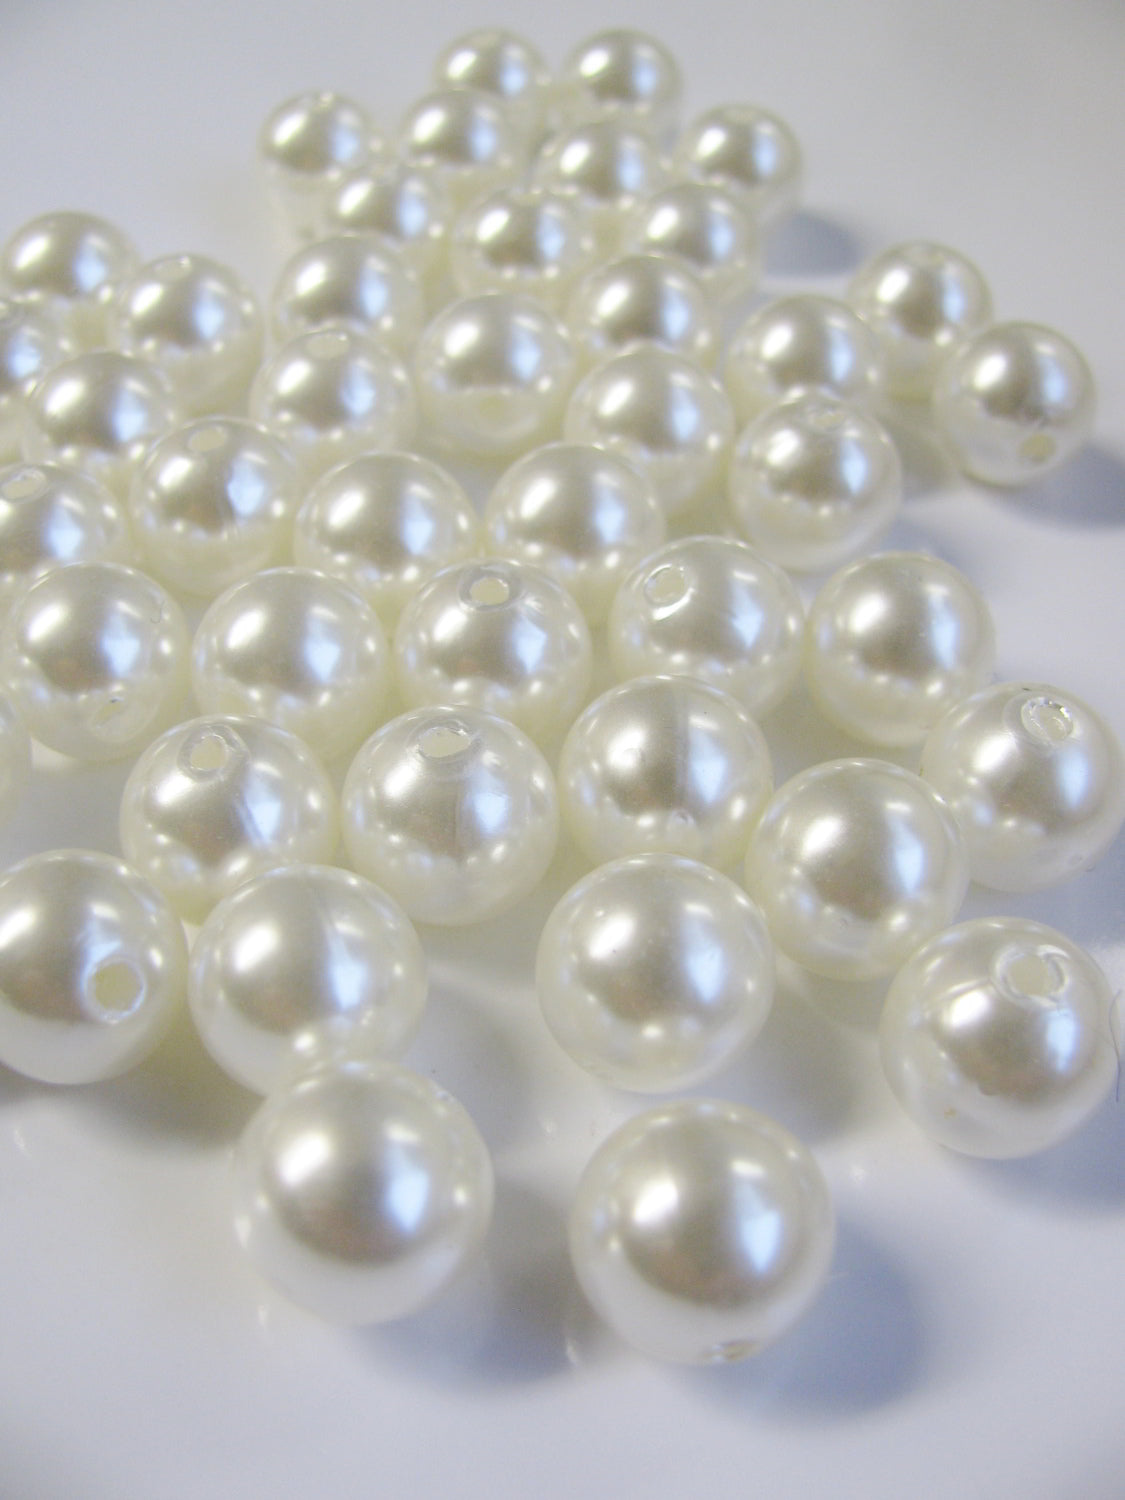 50 Wachsperlen 10mm in cremweiß, Schmuck, Perlen basteln, Dekoration, Hochzeit